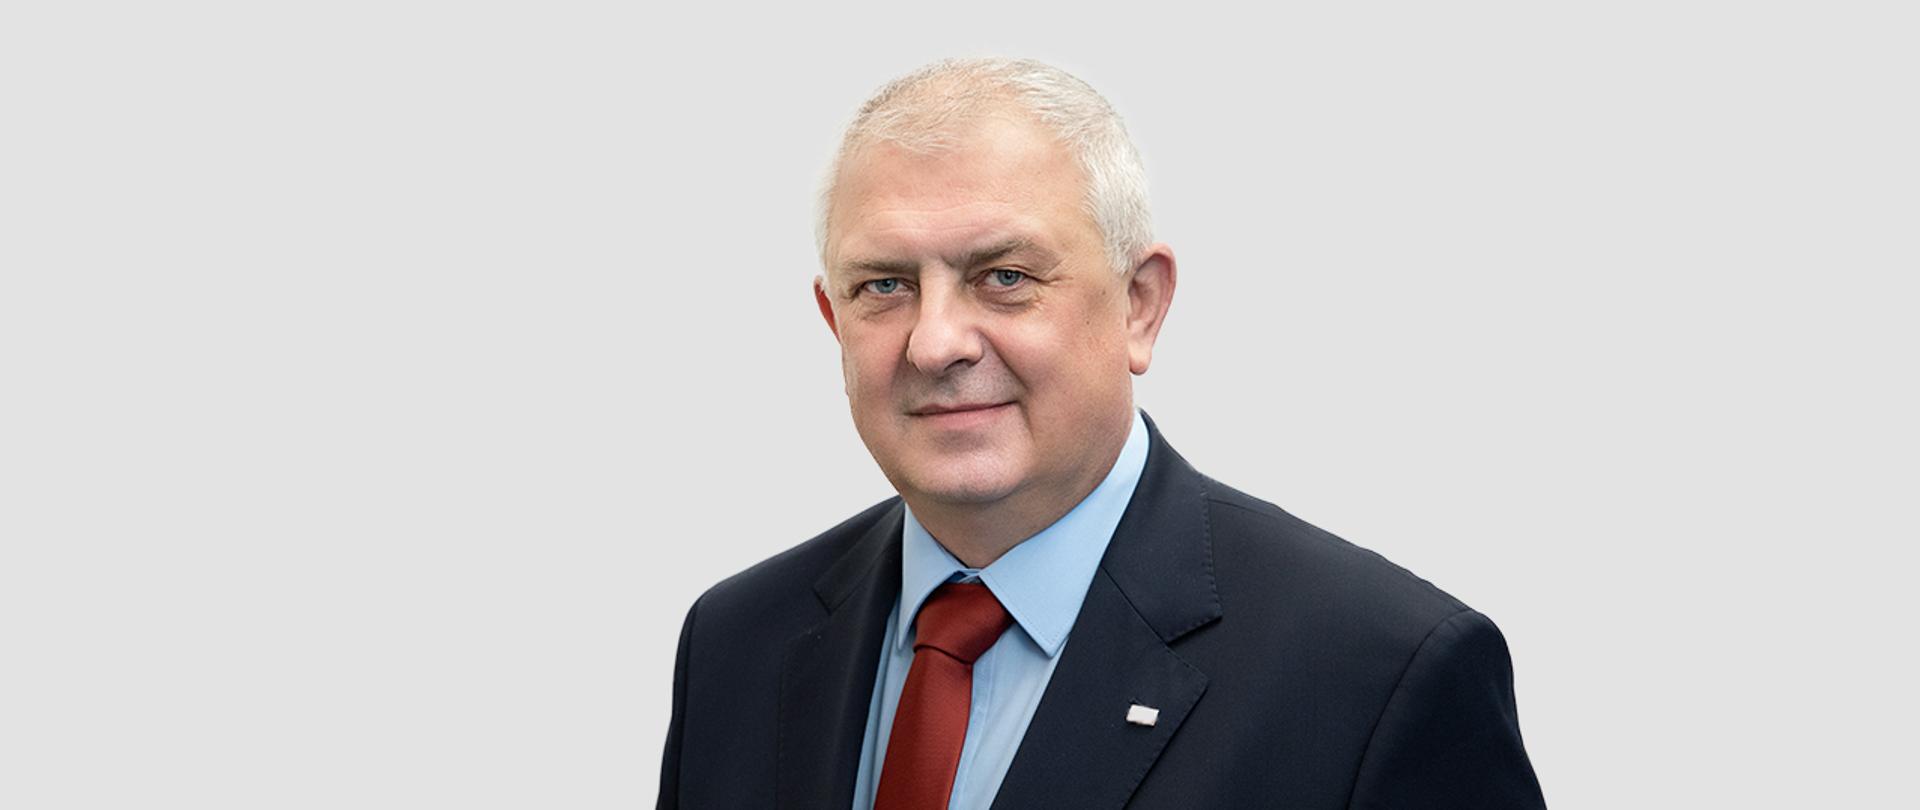 Sekretarz Stanu Grzegorz Piechowiak, w garniturze, z czerwonym krawatem